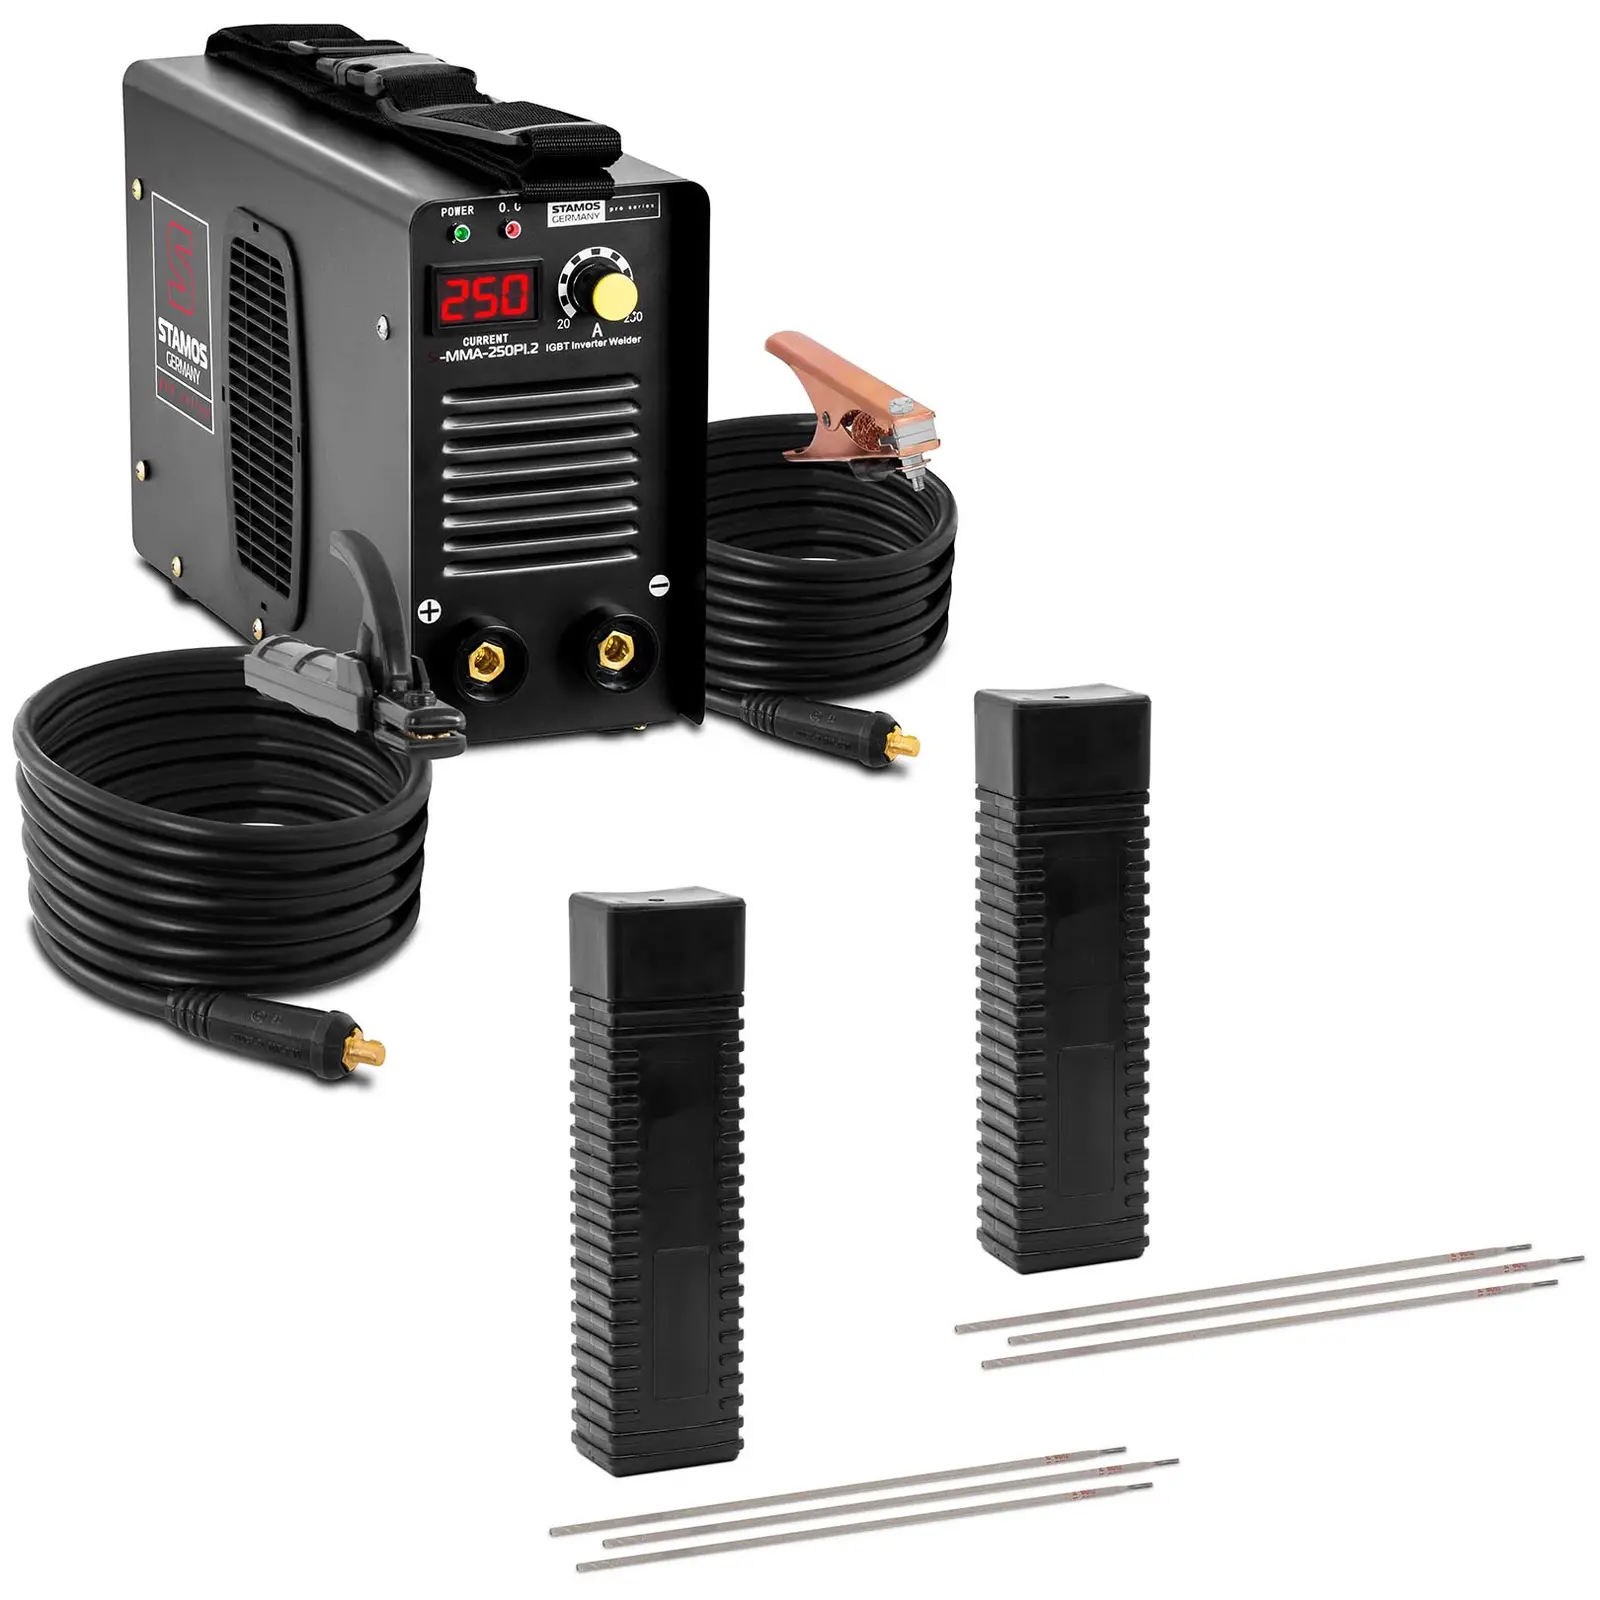 Svejsesæt elektrodesvejser - 250 A - 8 m kabel - svejseelektroder E6013 rutil-cellulose - 3,2 x 350 mm - 2 x 5 kg